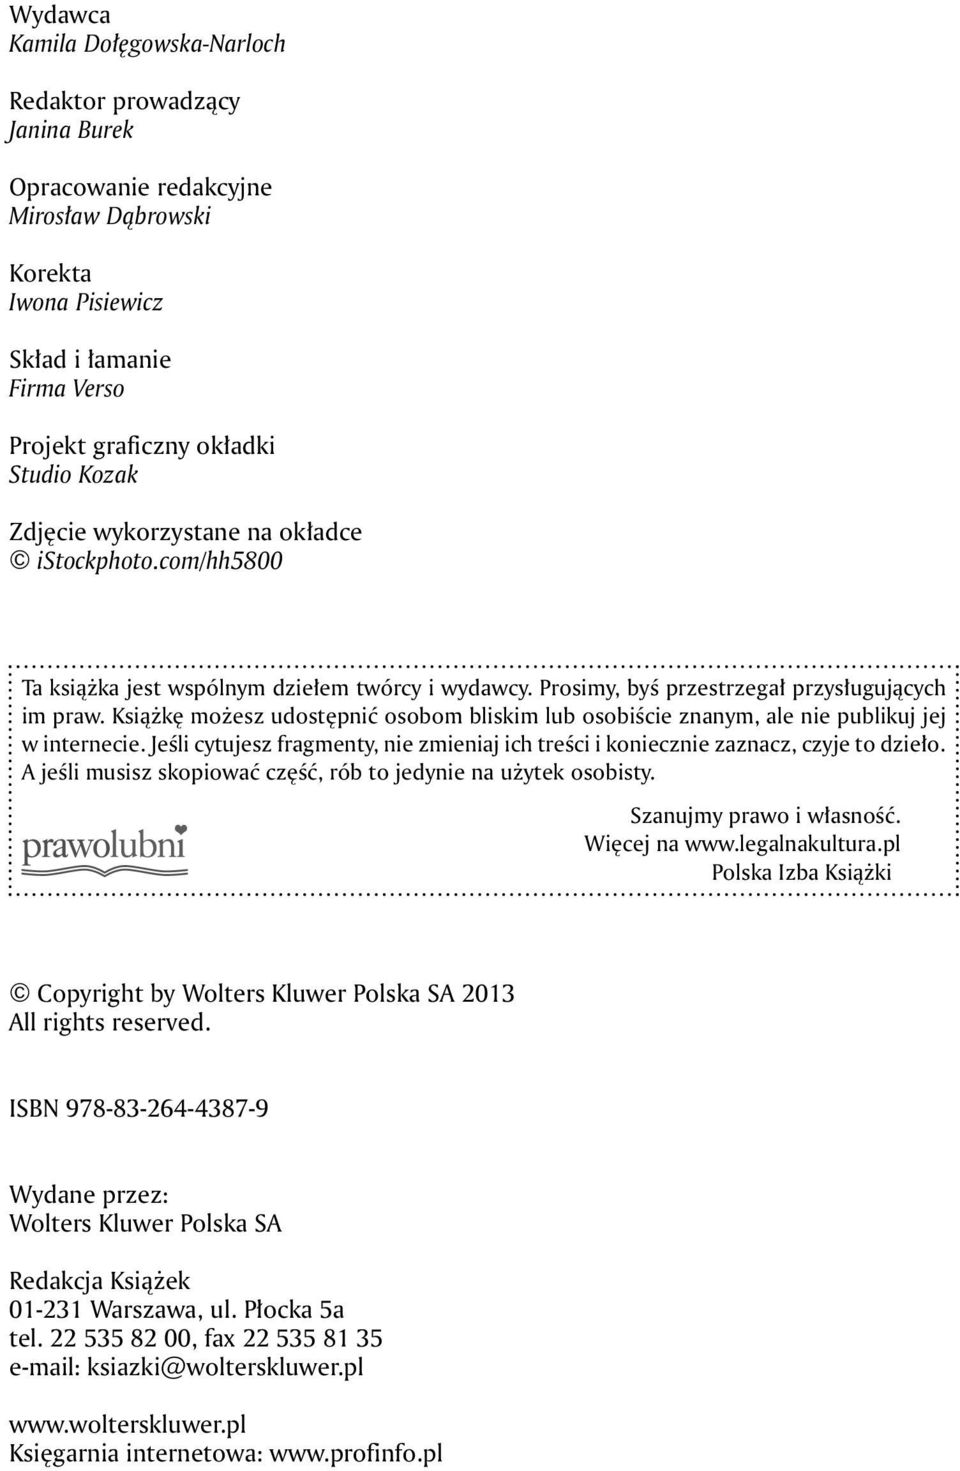 redakcyjne Renata KorektaWłodek Iwona Pisiewicz Korekta, skład i łamanie Skład i łamanie Firma Verso www.wydawnictwojak.